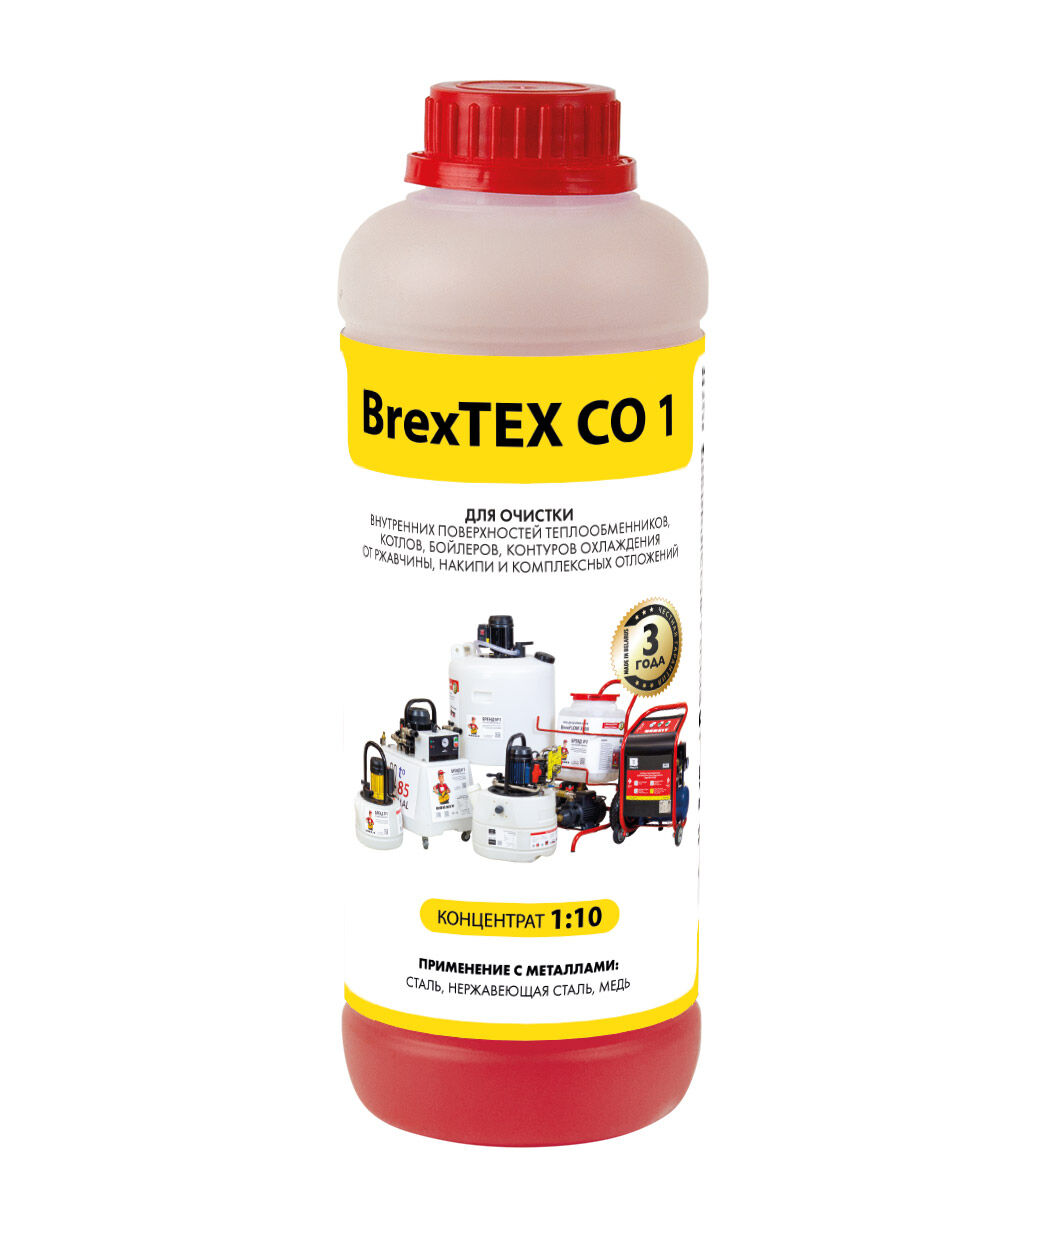 Реагент для очистки теплообменного и отопительного оборудования BrexTEX CO 1 brexit